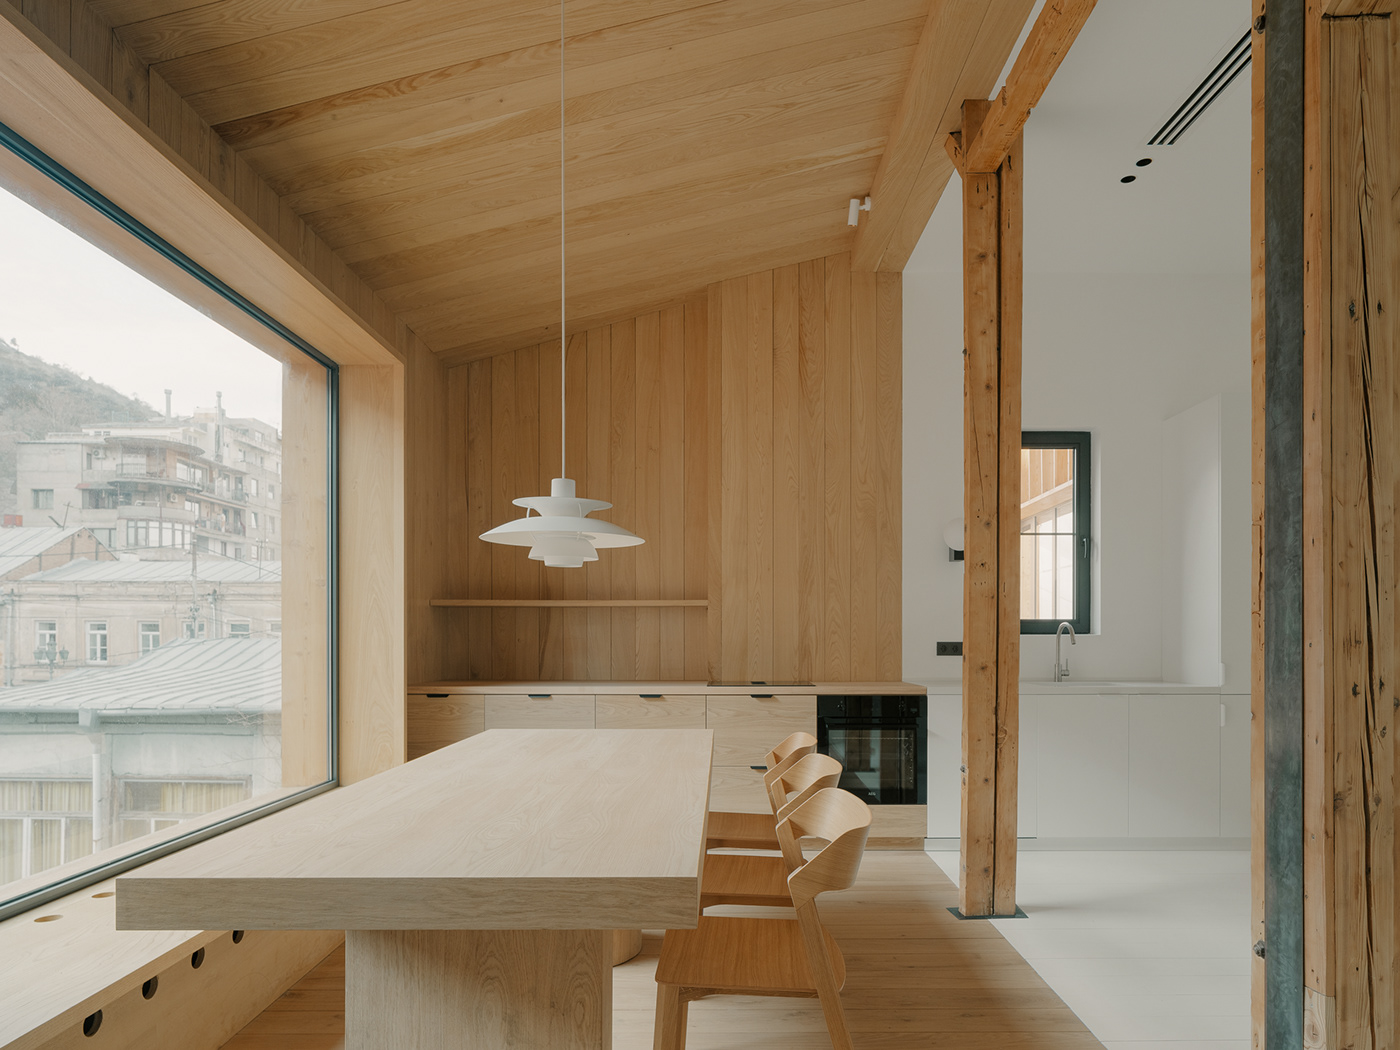 Scandinavian Scandinavian design modern interior design Attic scandinavian interior wood interior